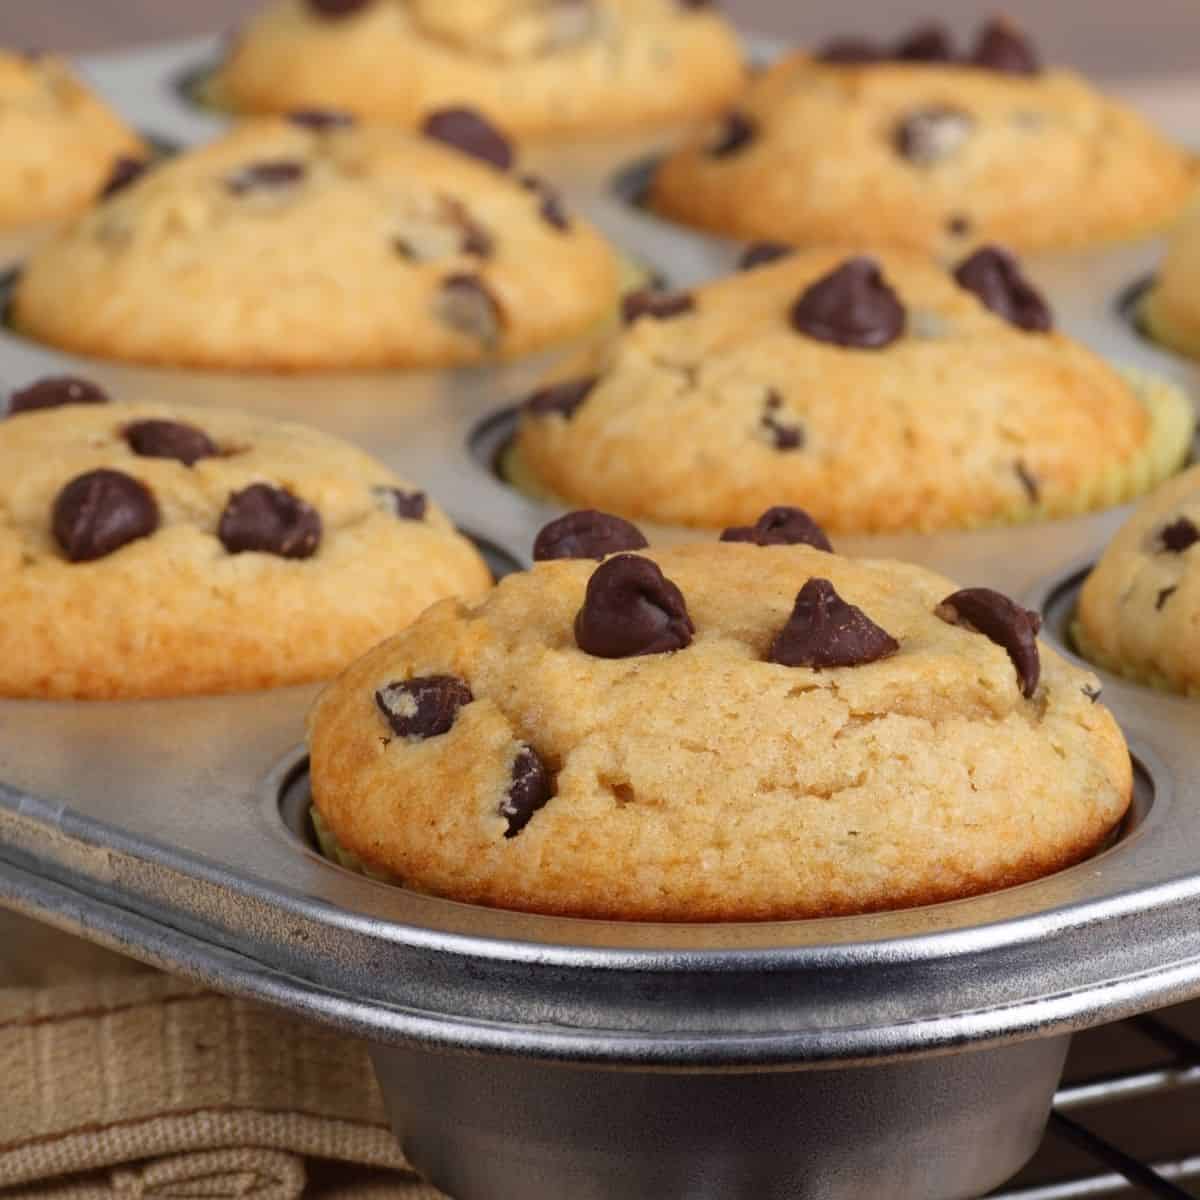 Six mini chocolate chip muffins in a muffin tin